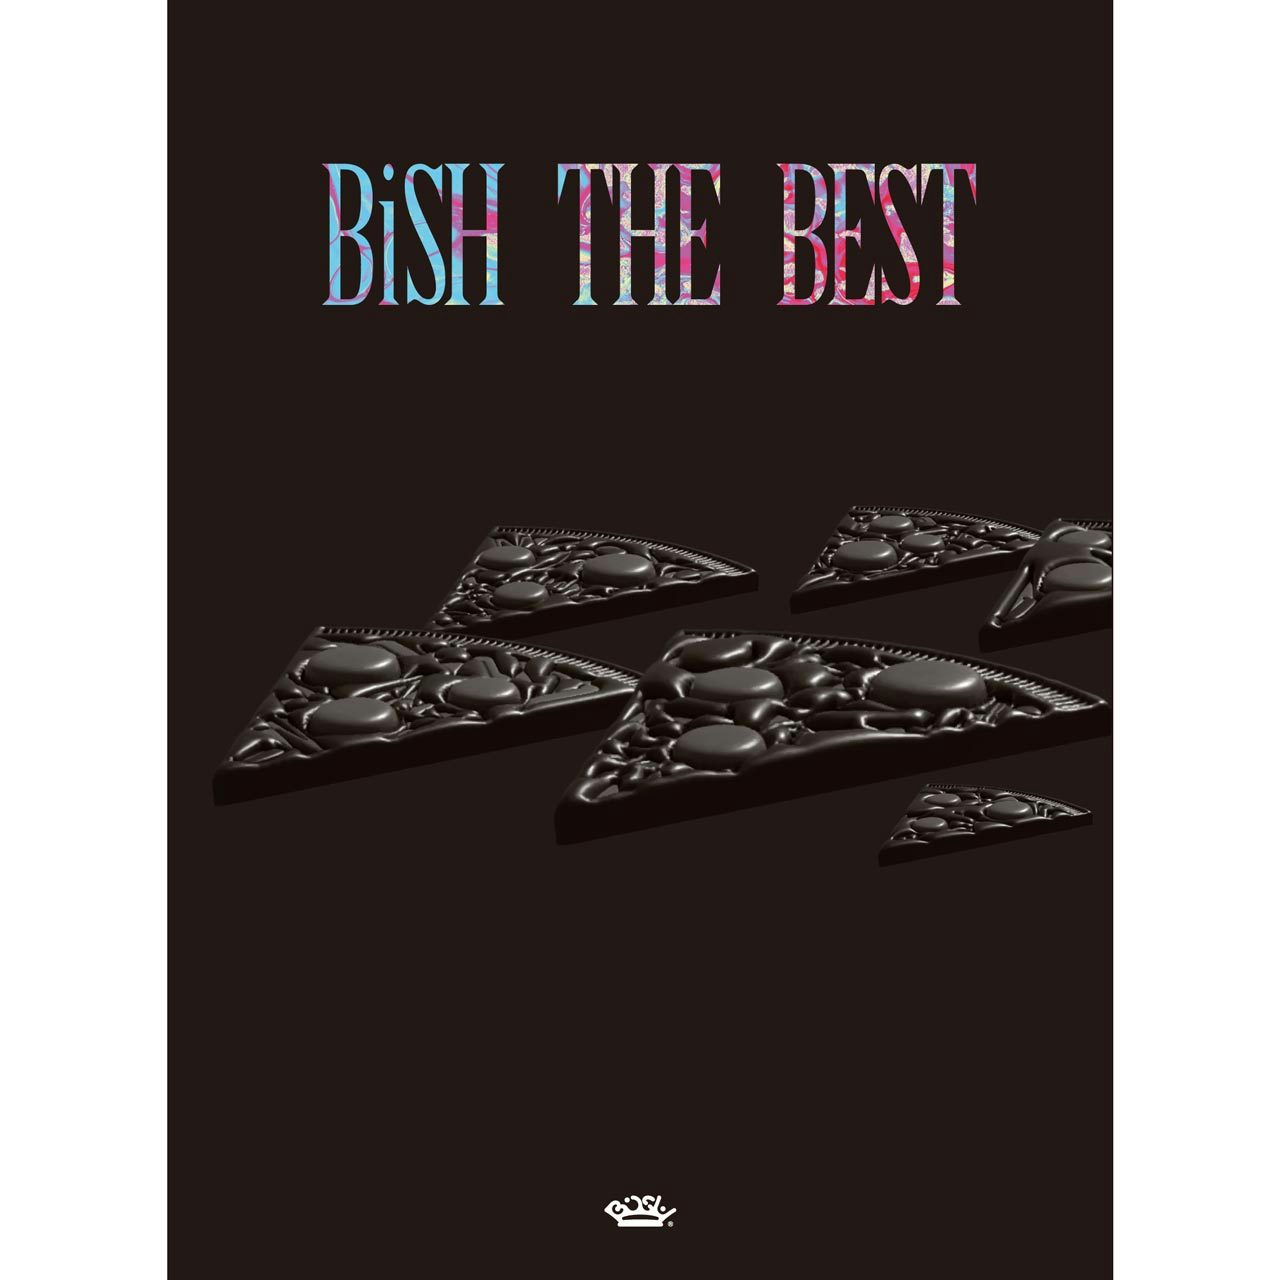 美品!BiSH THE BEST 2CD+Blu-ray+РНОТОВООК-